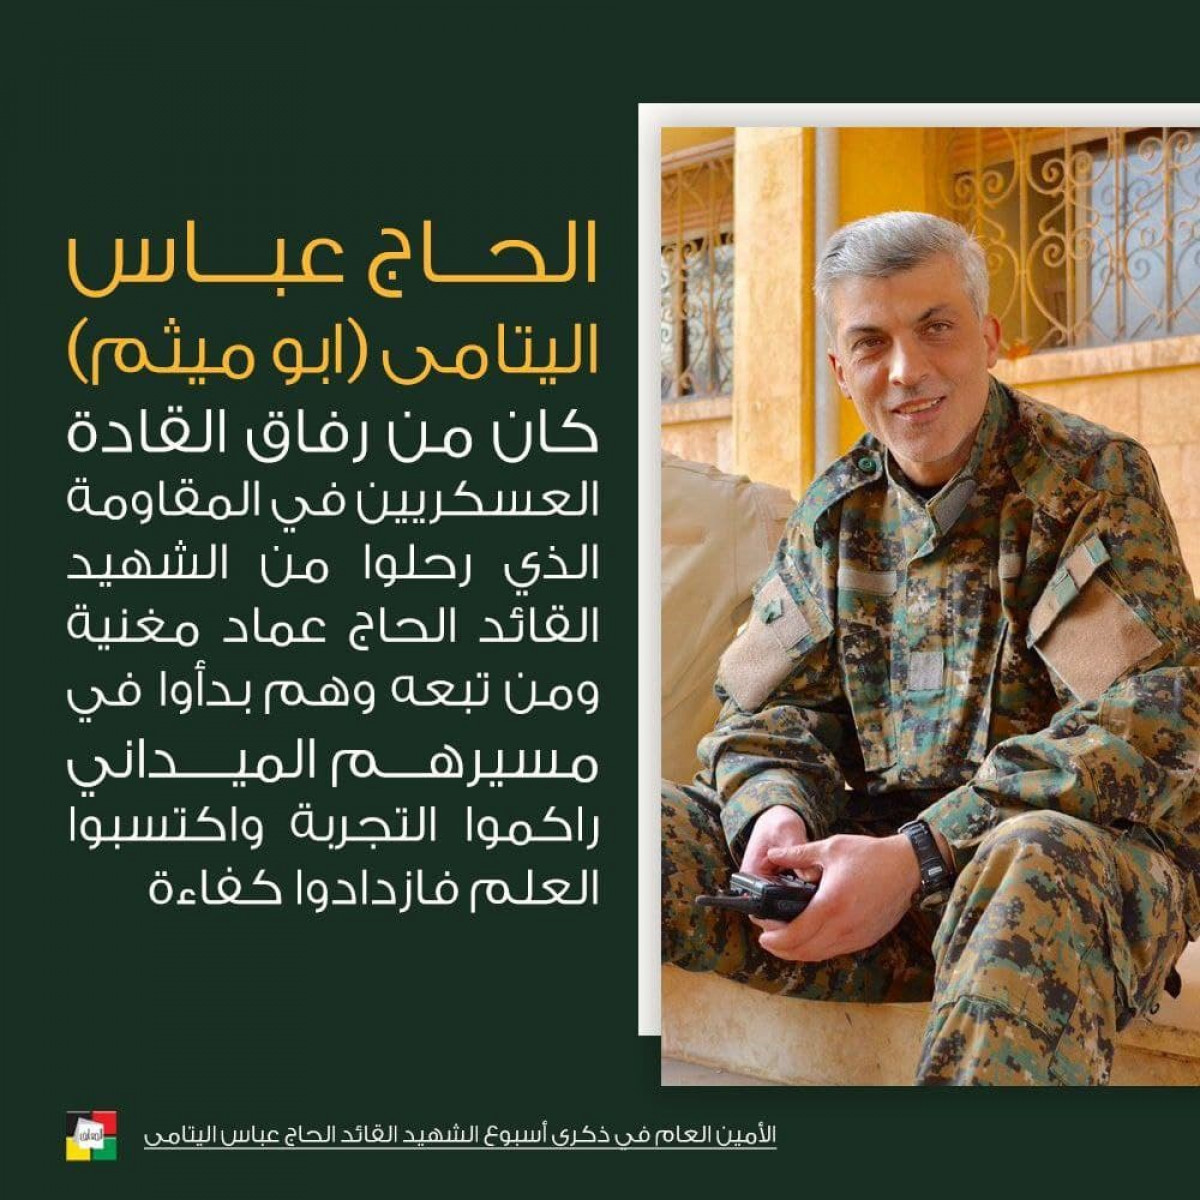 الحاج عباس اليتامى كان من رفاق القادة العسكريين في المقاومة